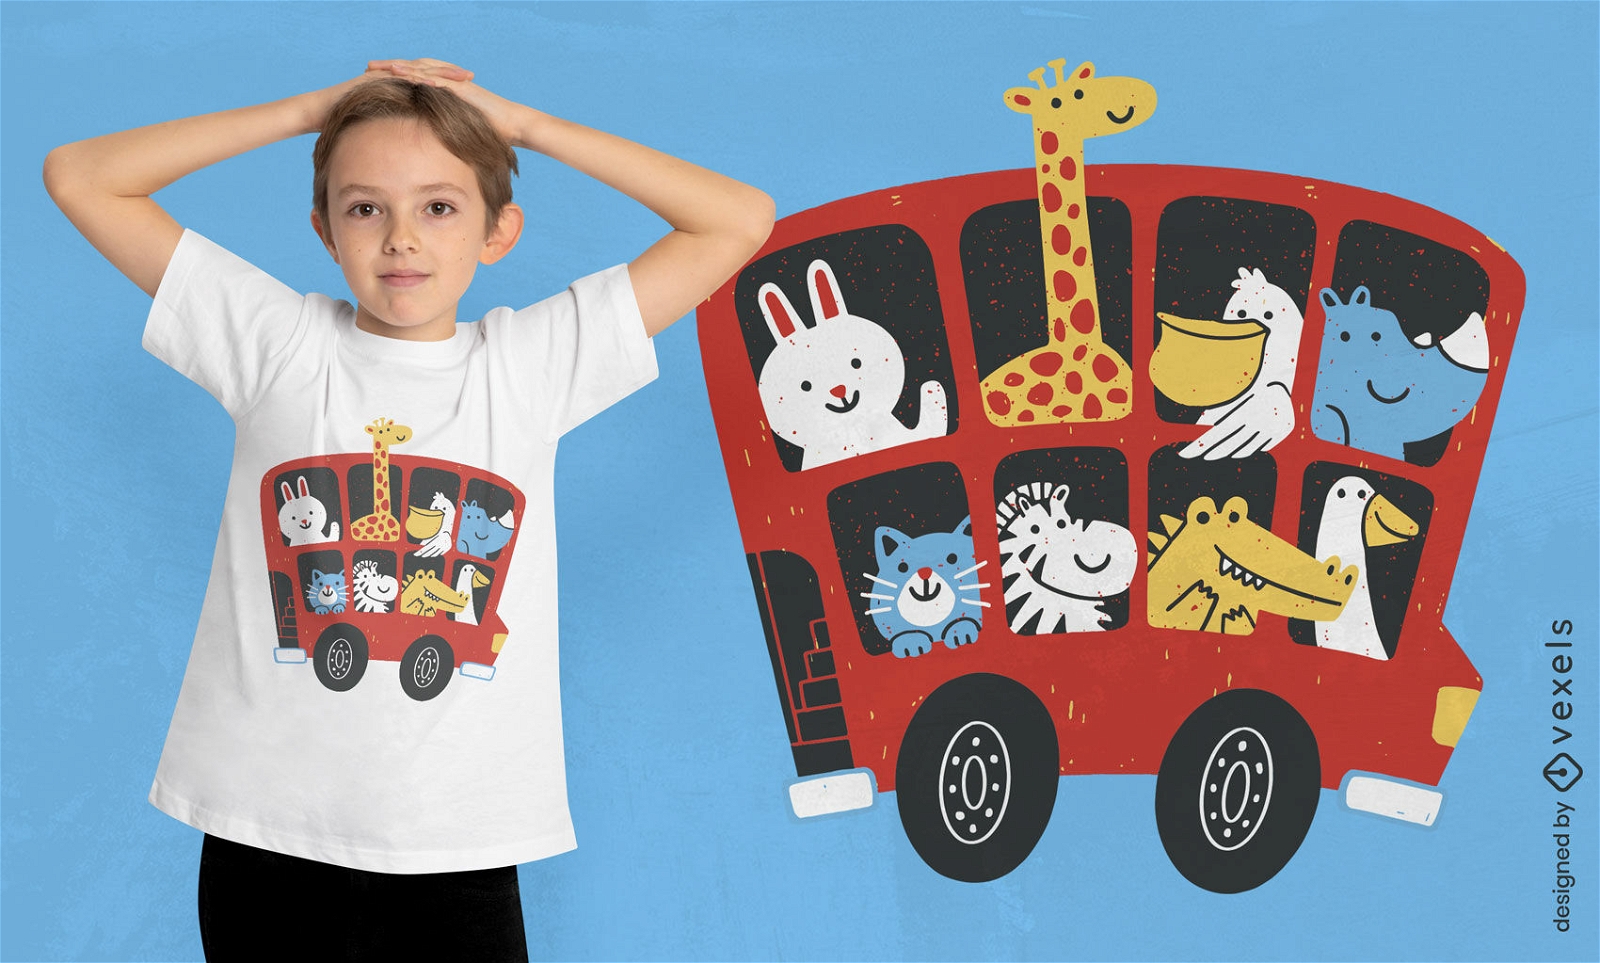 Animais em design de camiseta de ônibus inglês